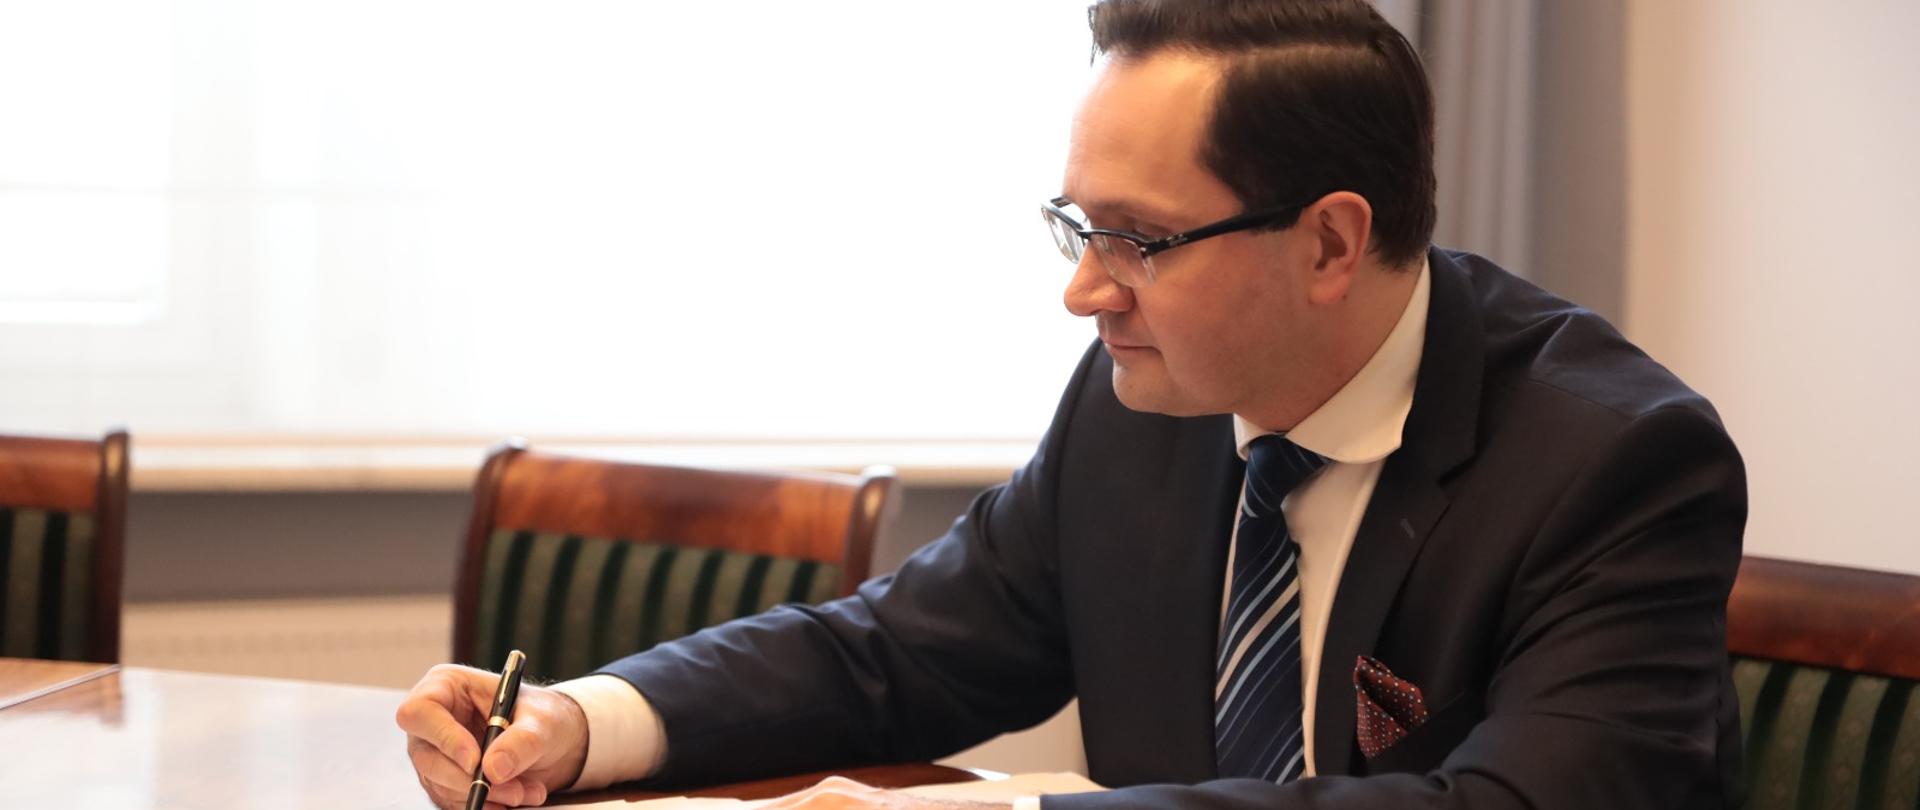 Wiceminister Mariusz Golecki podpisuje dokumenty. Siedzi przy stole i w prawym ręku trzyma pióro.